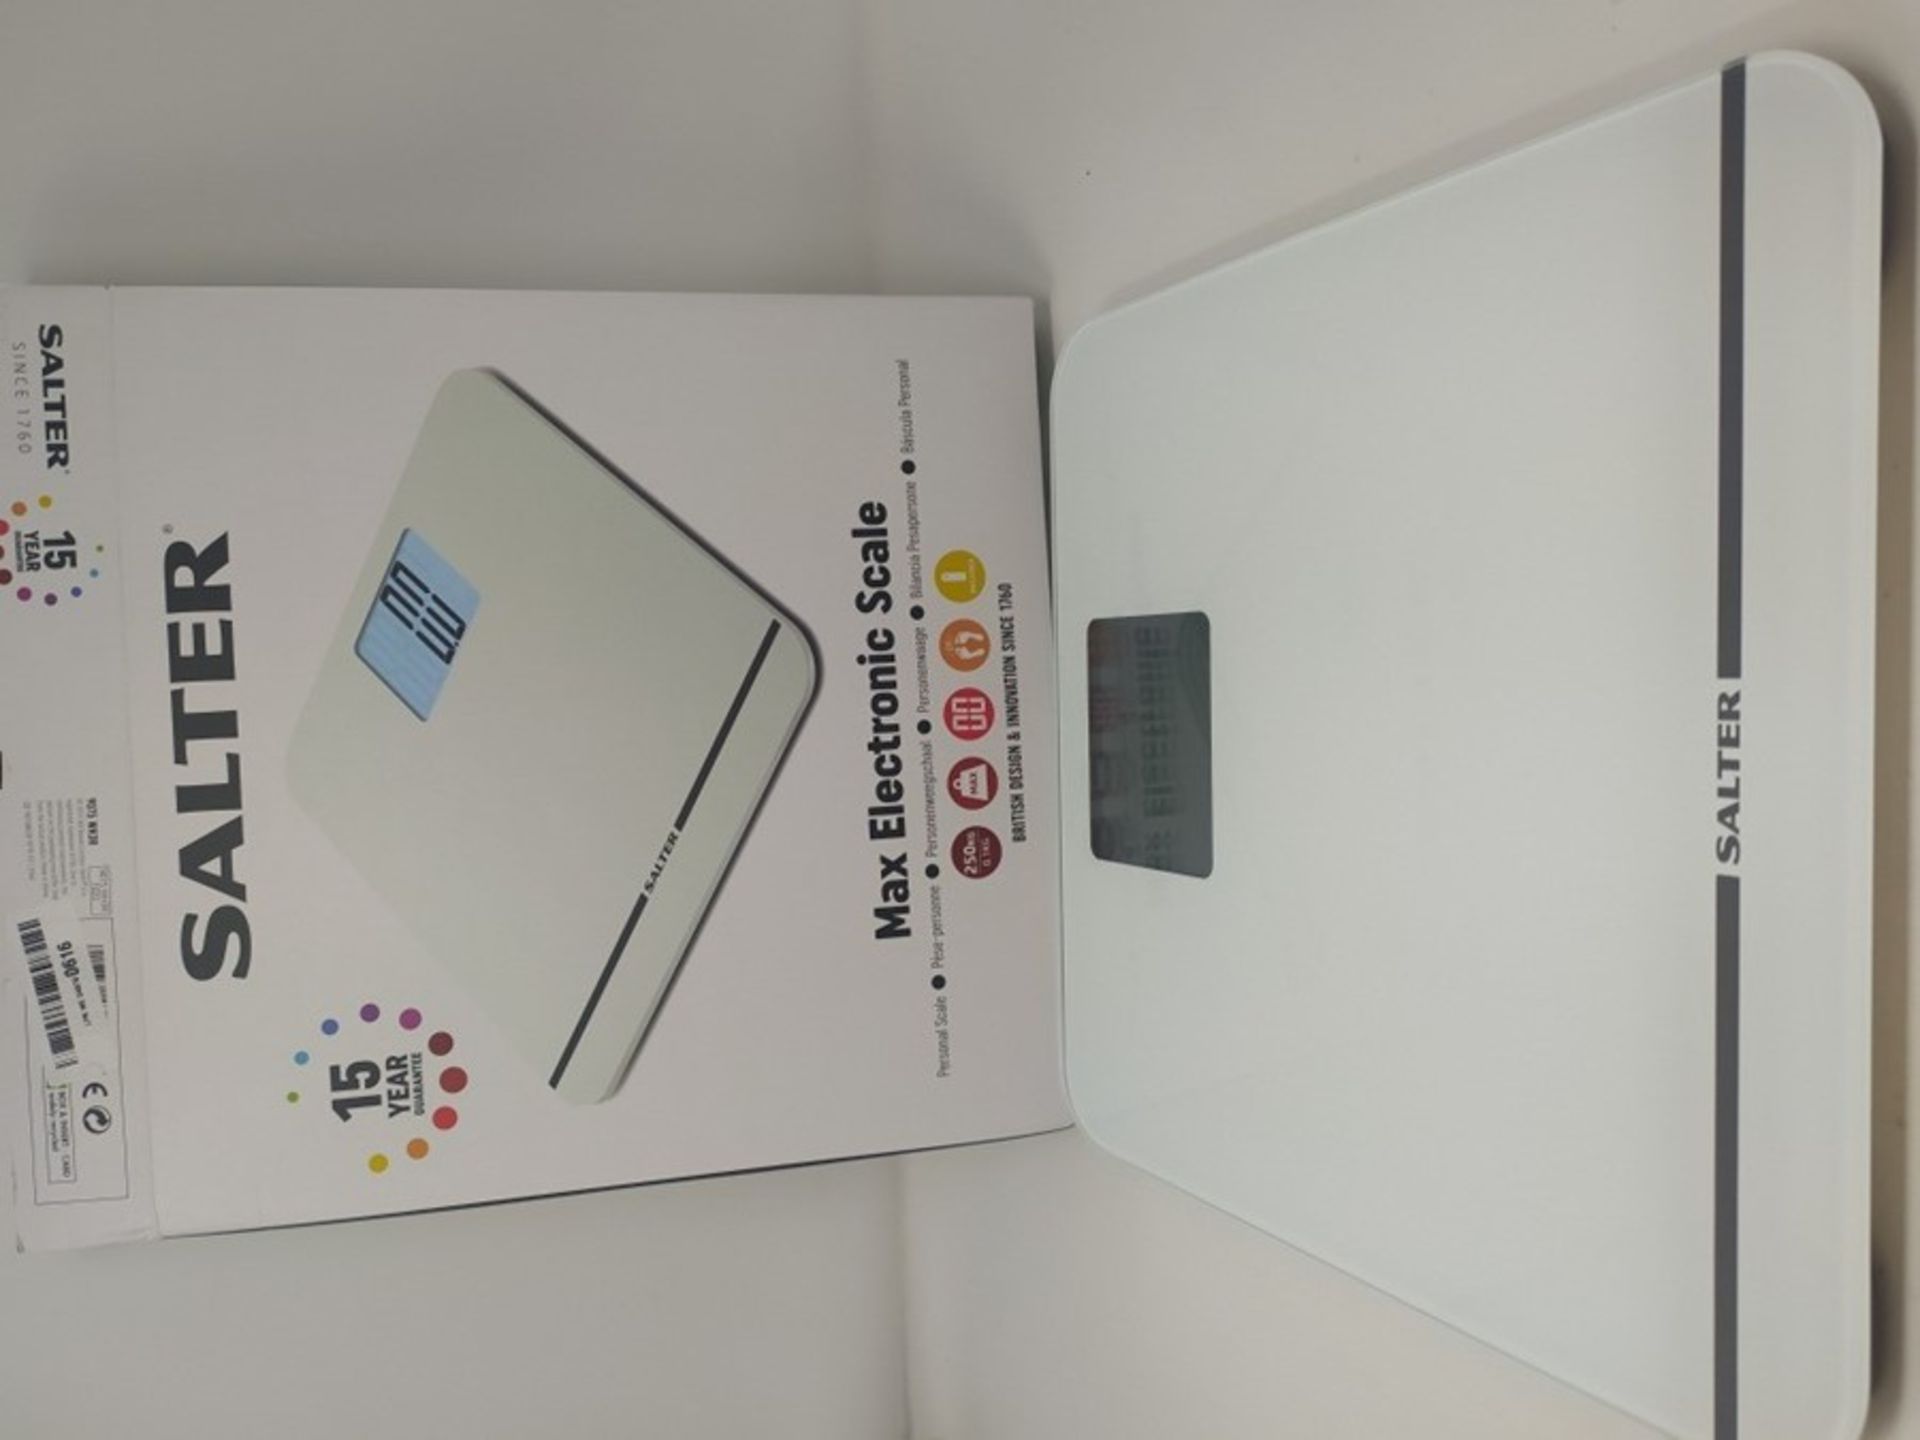 S�a�l�t�e�r� �M�A�X� �E�l�e�c�t�r�o�n�i�c� �B�a�t�h�r�o�o�m� �S�c�a�l�e� �-� �2�5�0�k�g� �C�a�p�a�c� - Image 2 of 2